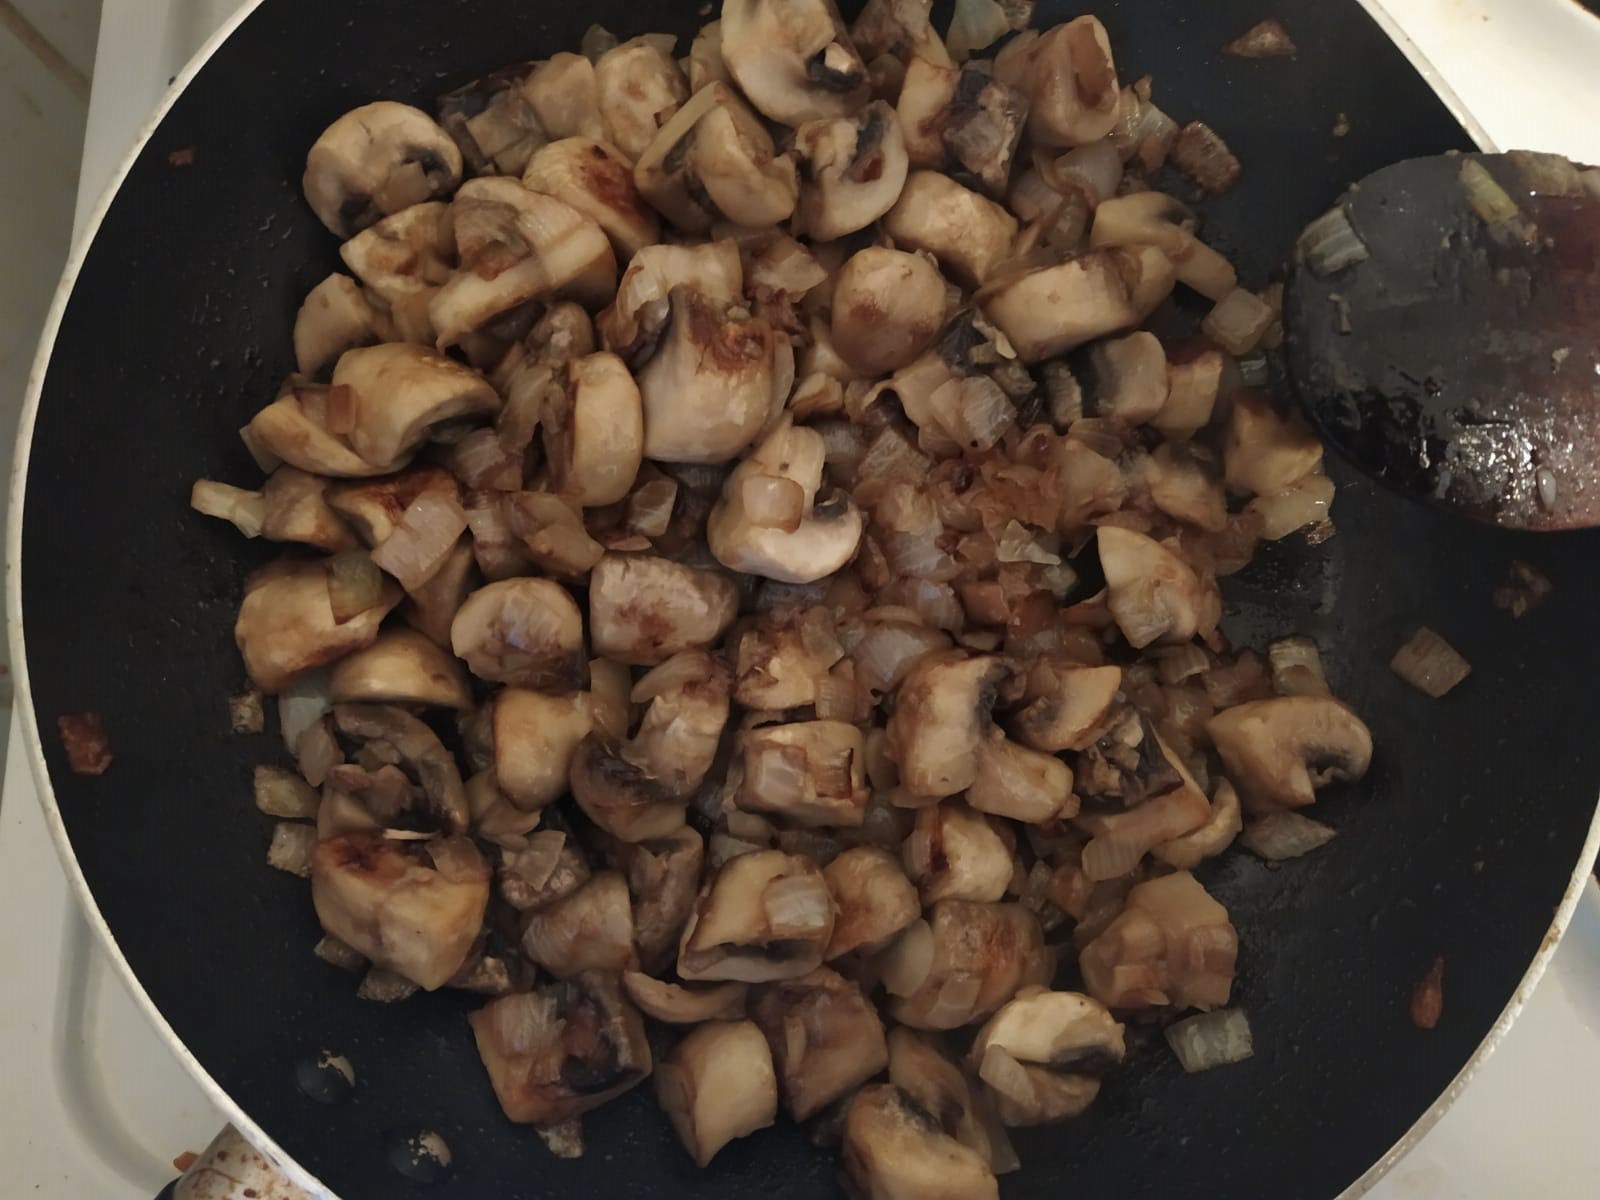  mushrooms 